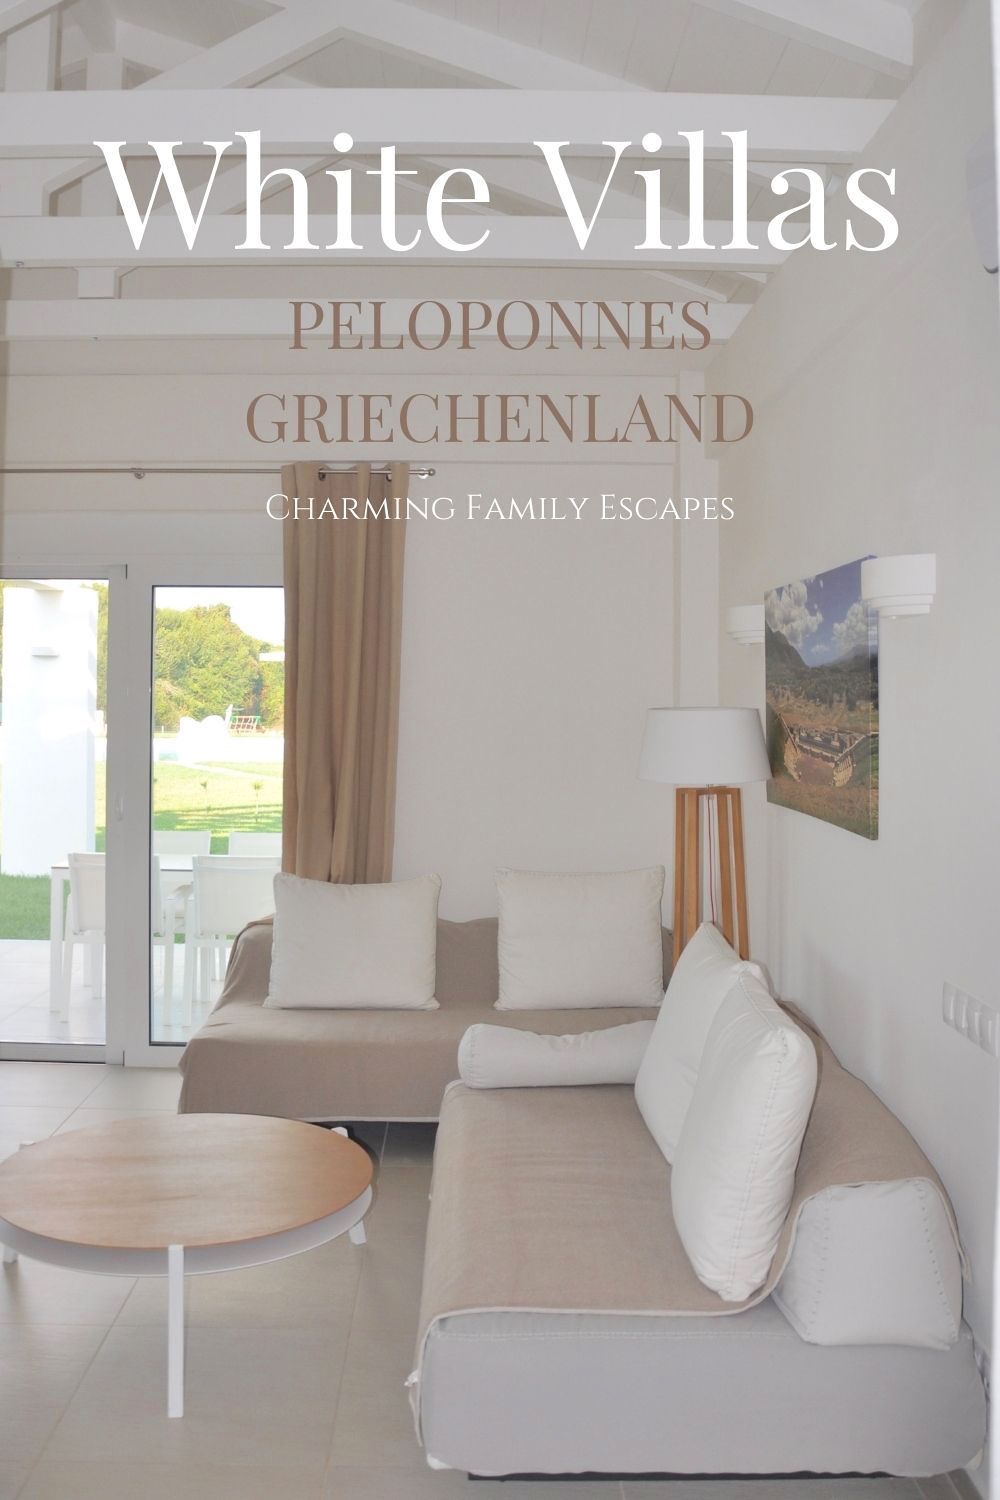 White Villas, Peloponnes, Griechenland auf Charming Family Escapes